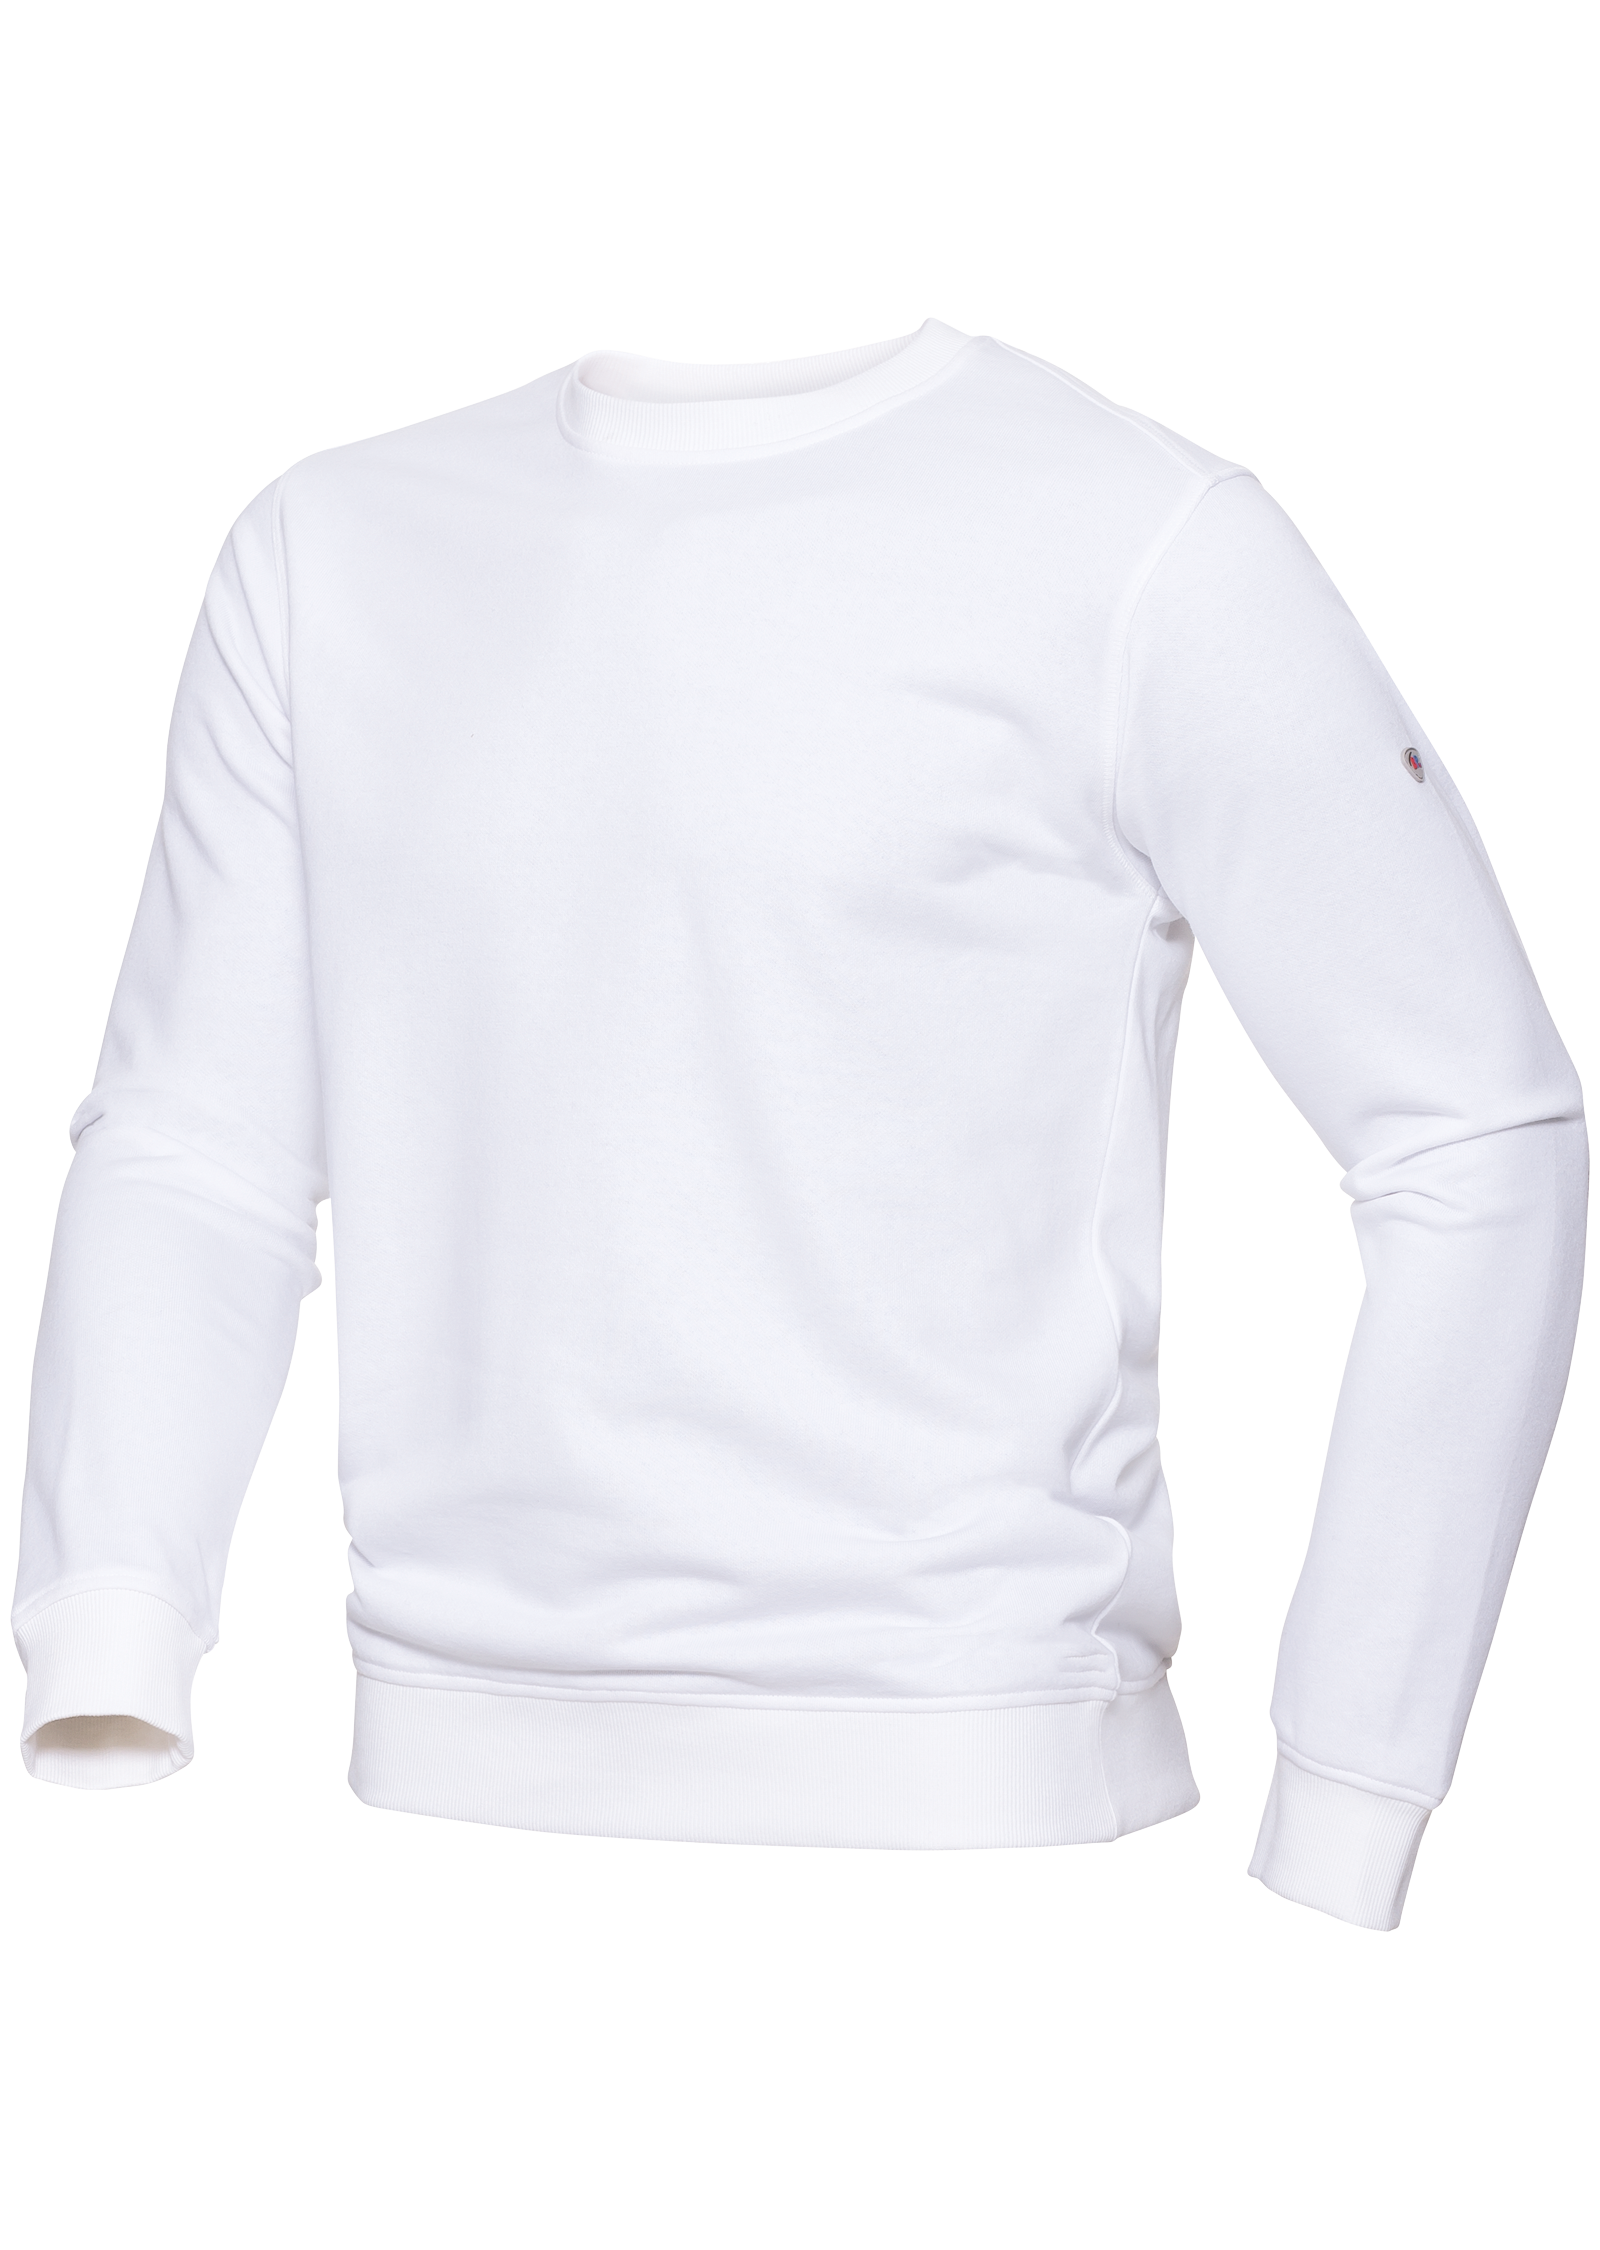 BP® Sweatshirt für Sie & Ihn